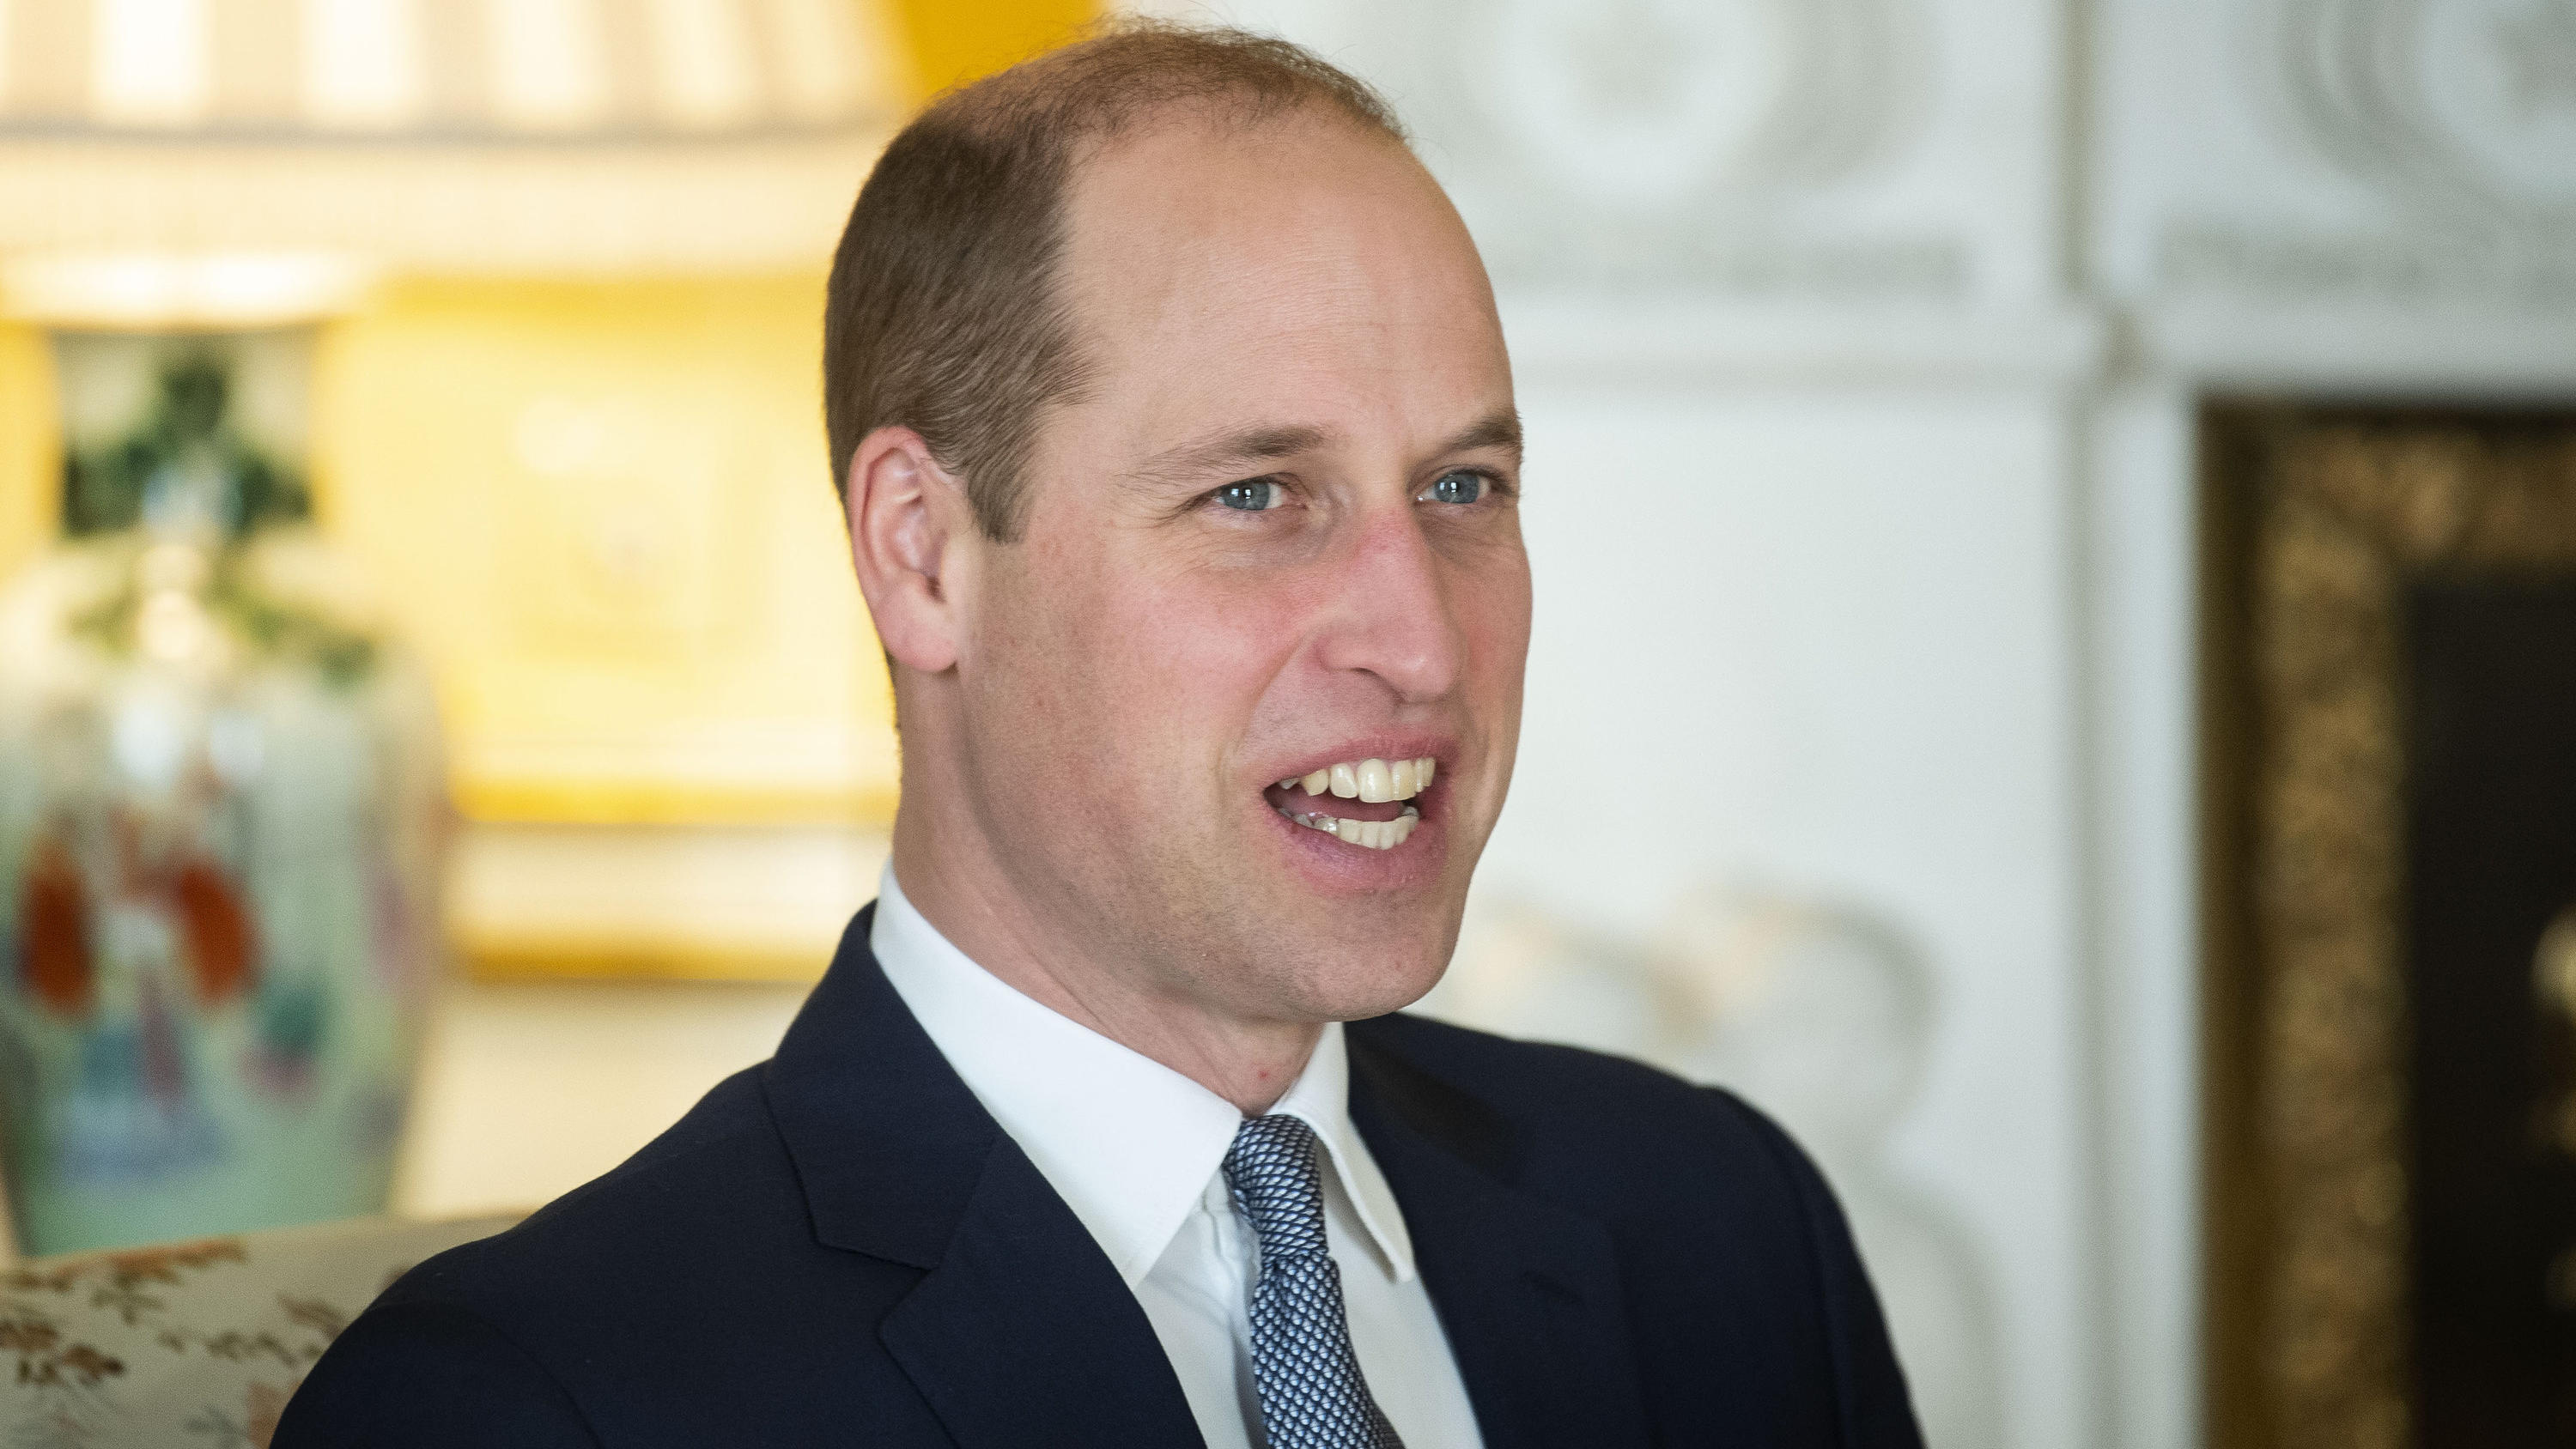 ARCHIV - 20.01.2020, Großbritannien, London: Prinz William, Herzog von Cambridge, nimmt im Rahmen des eintägigen Afrika-Gipfels «UK-Africa Investment Summit 2020» an einer Audienz mit dem ghanaischen Präsidenten teil. Prinz William feiert am 21.06.20